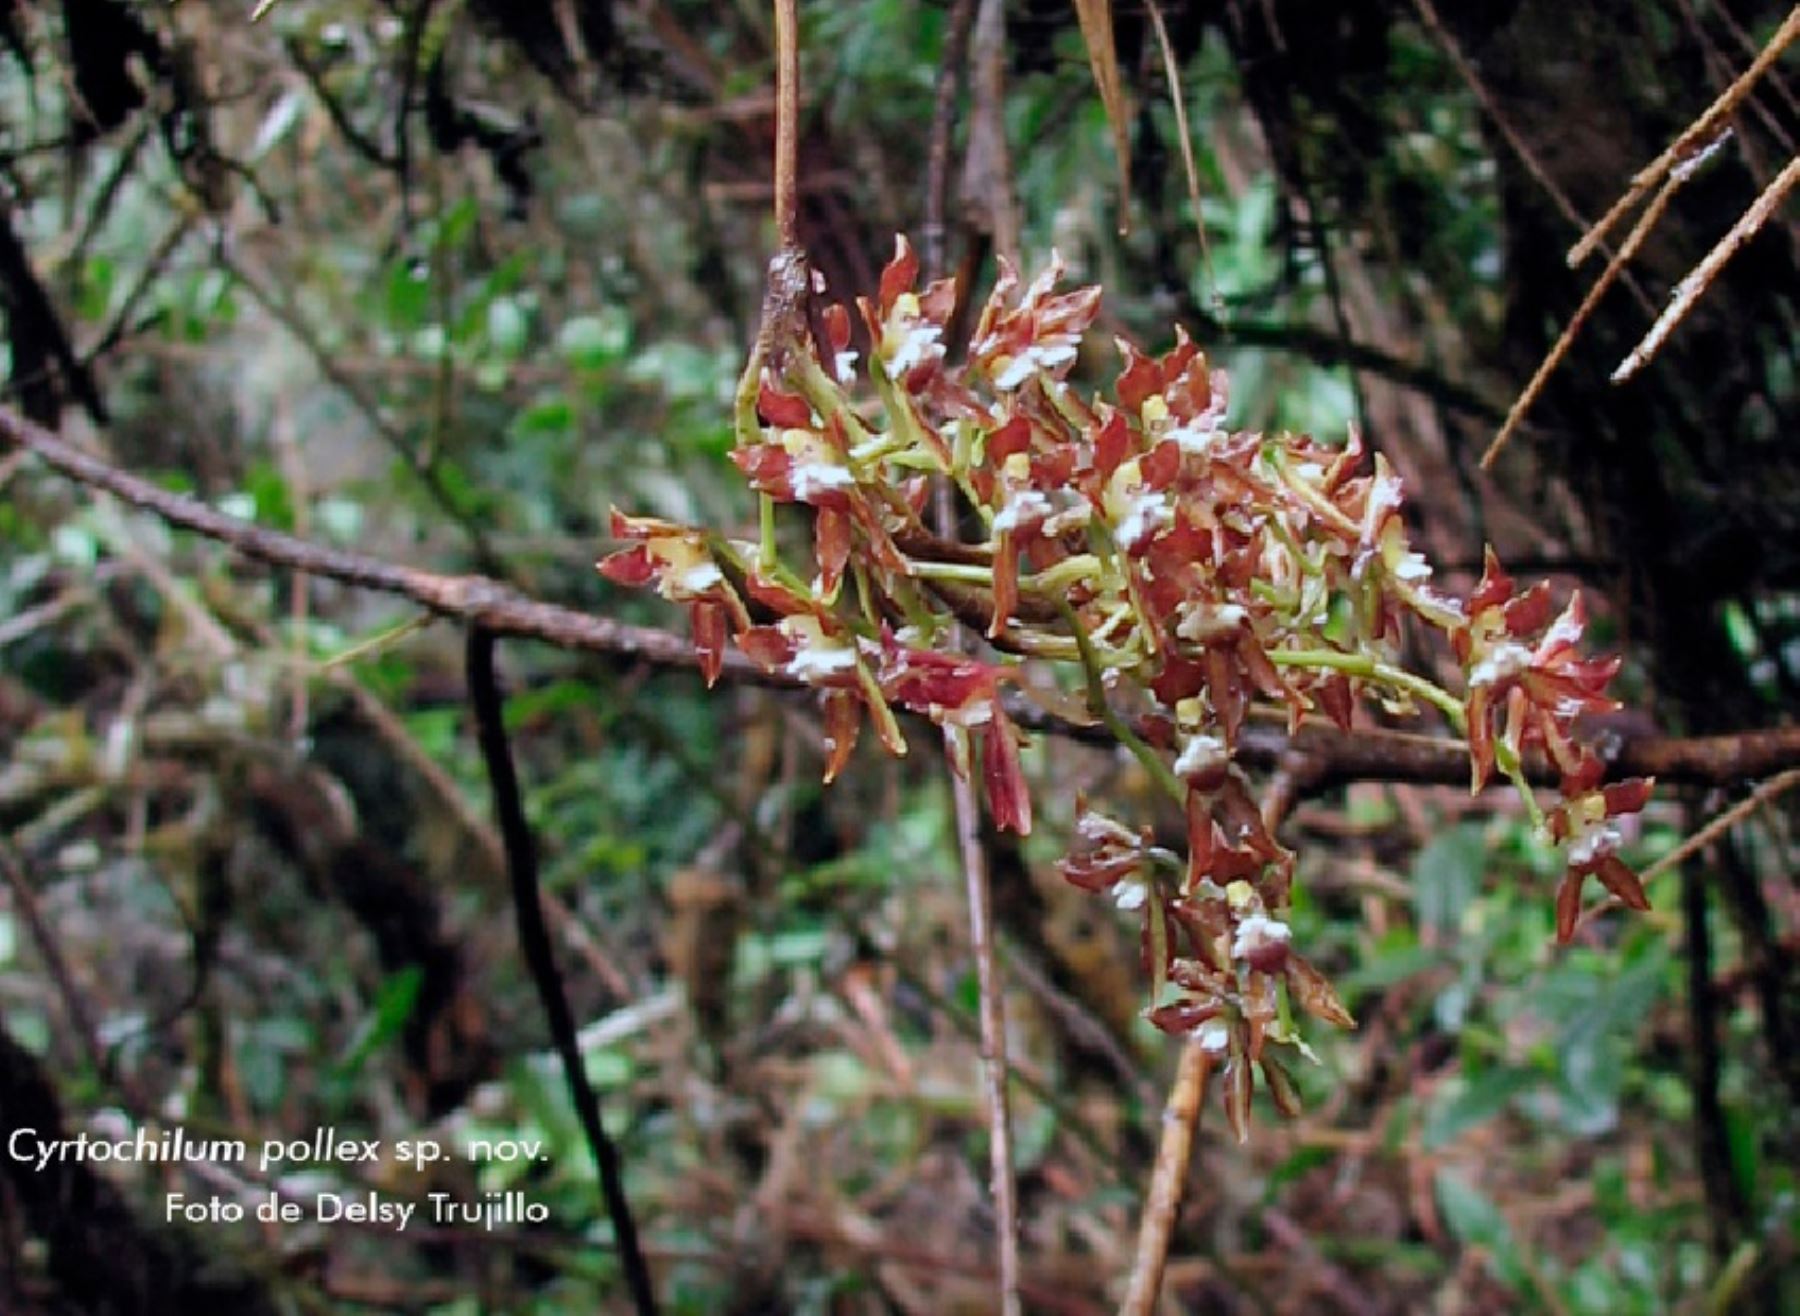 Formidable hallazgo científico: biólogos descubren nueva especie de orquídea en Amazonas